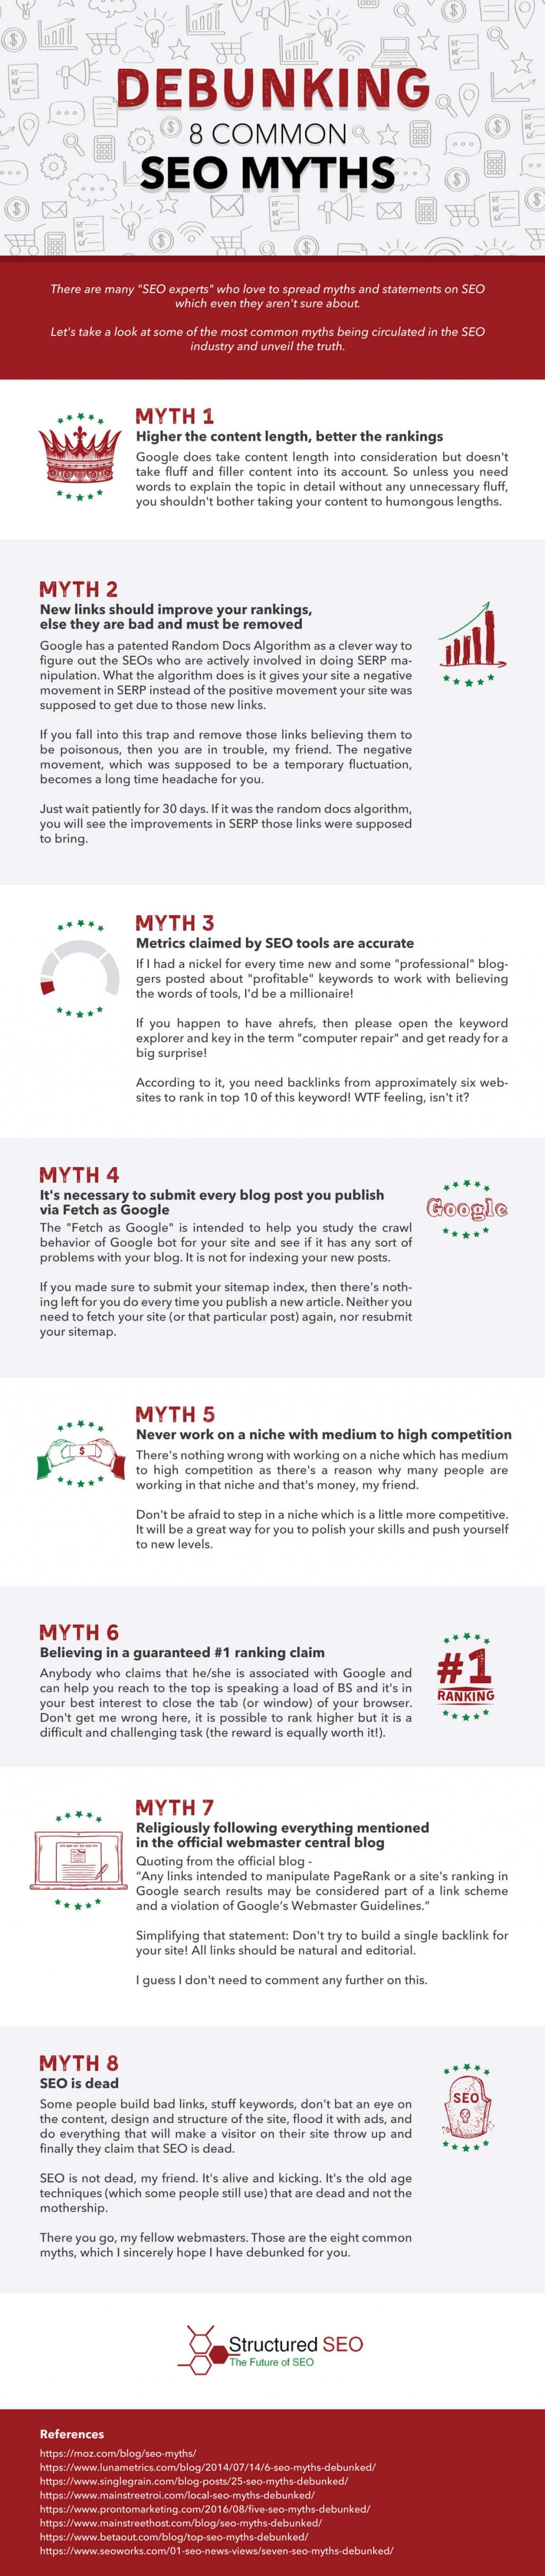 Common SEO Myths